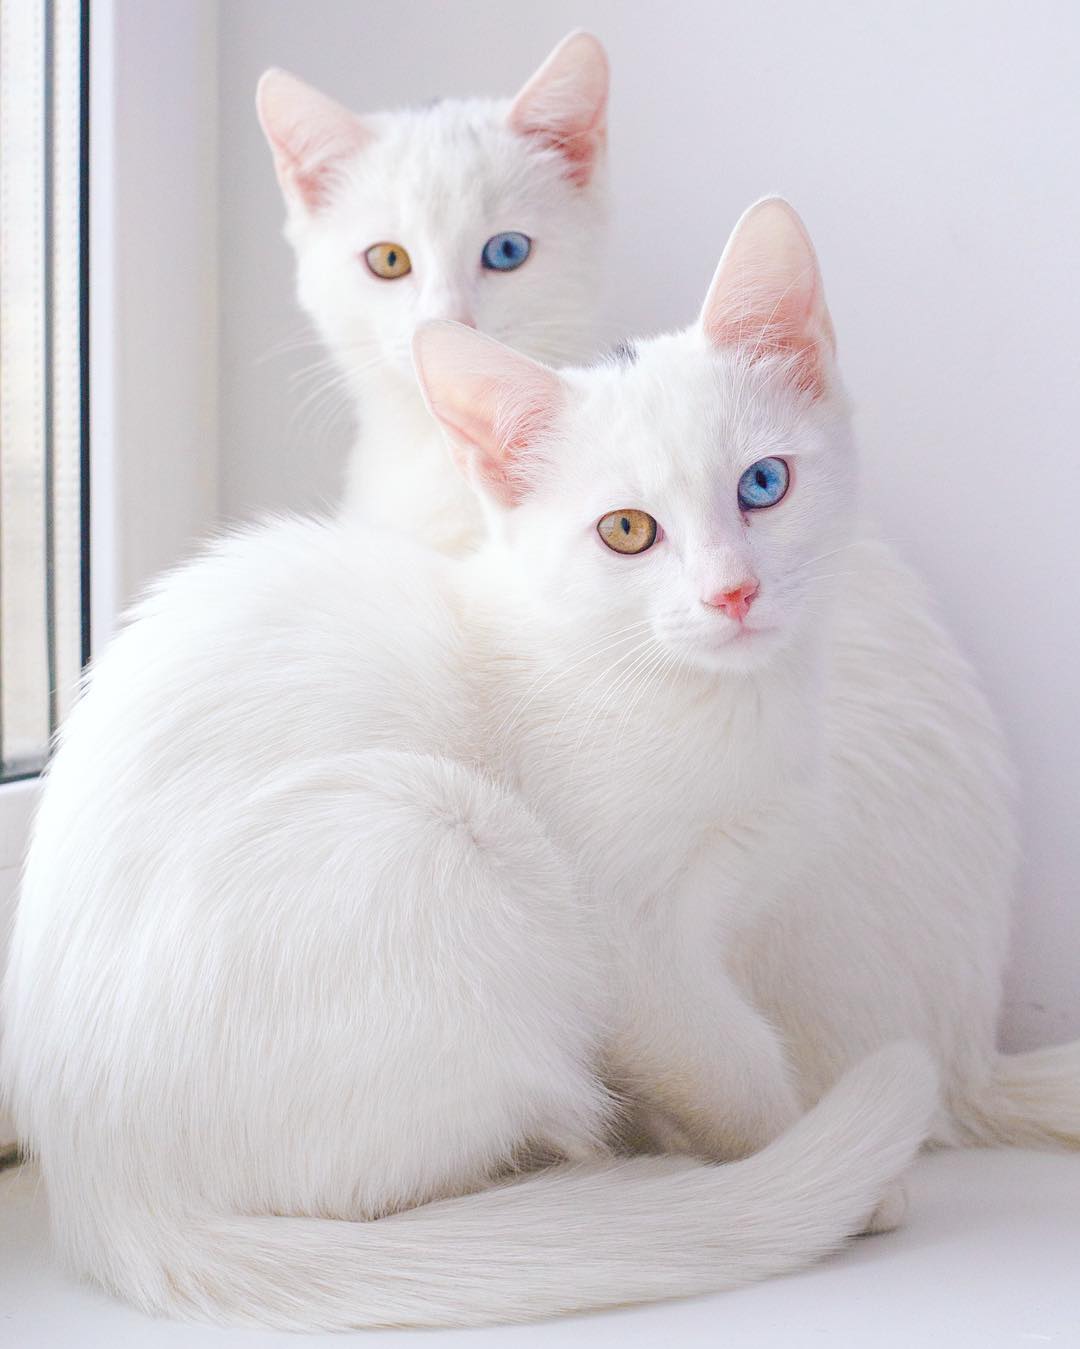 ikiz-kediler-renkli-gozlu-cins-kediler-patiliyo-11